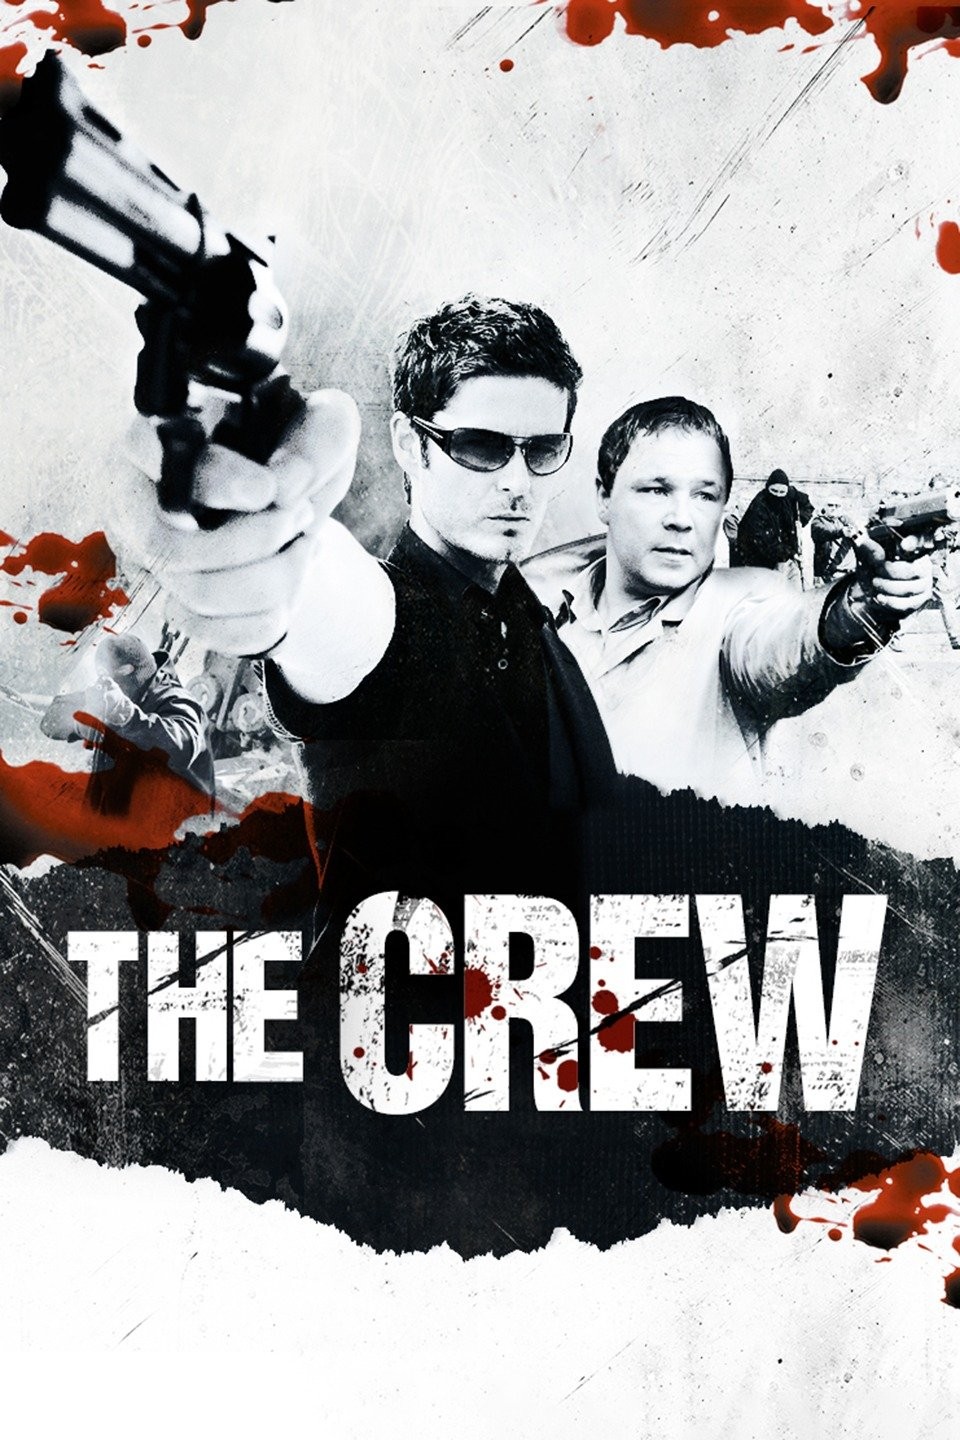 The Crew (2021) - Filmaffinity